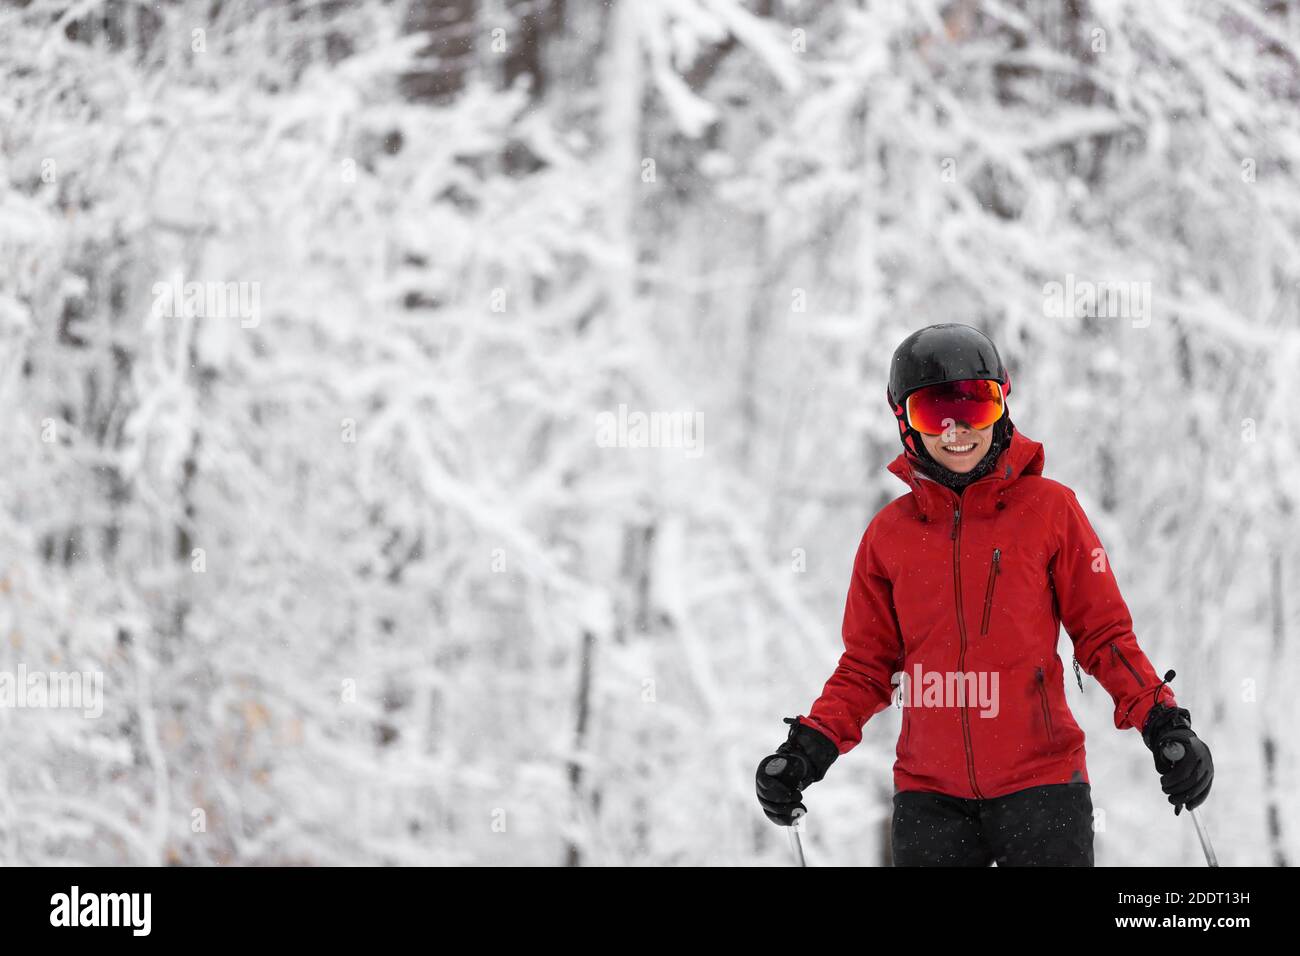 Wintersport glücklich Skifahrer Alpine Skifahren gehen dowhill gegen schneebedeckten Bäumen Hintergrund während Winter Schneesturm. Frau in roter Jacke und Brille Stockfoto